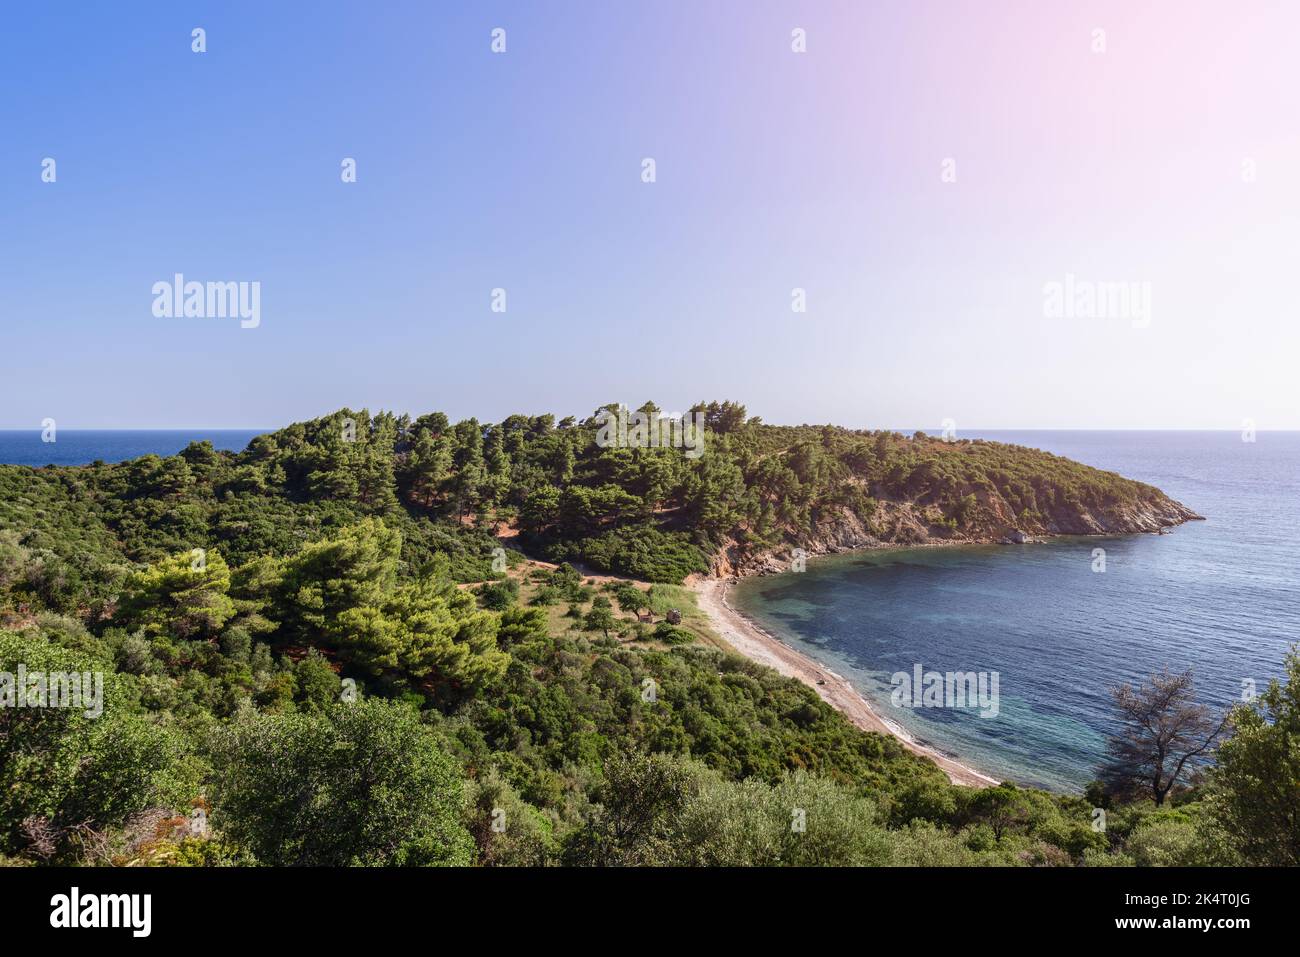 Vista panoramica del piccolo capo, che fa parte della penisola di Sithonia, coltivata con vegetazione fitta tra cui alberi, con stretta striscia di spiaggia di sabbia, Chalki Foto Stock